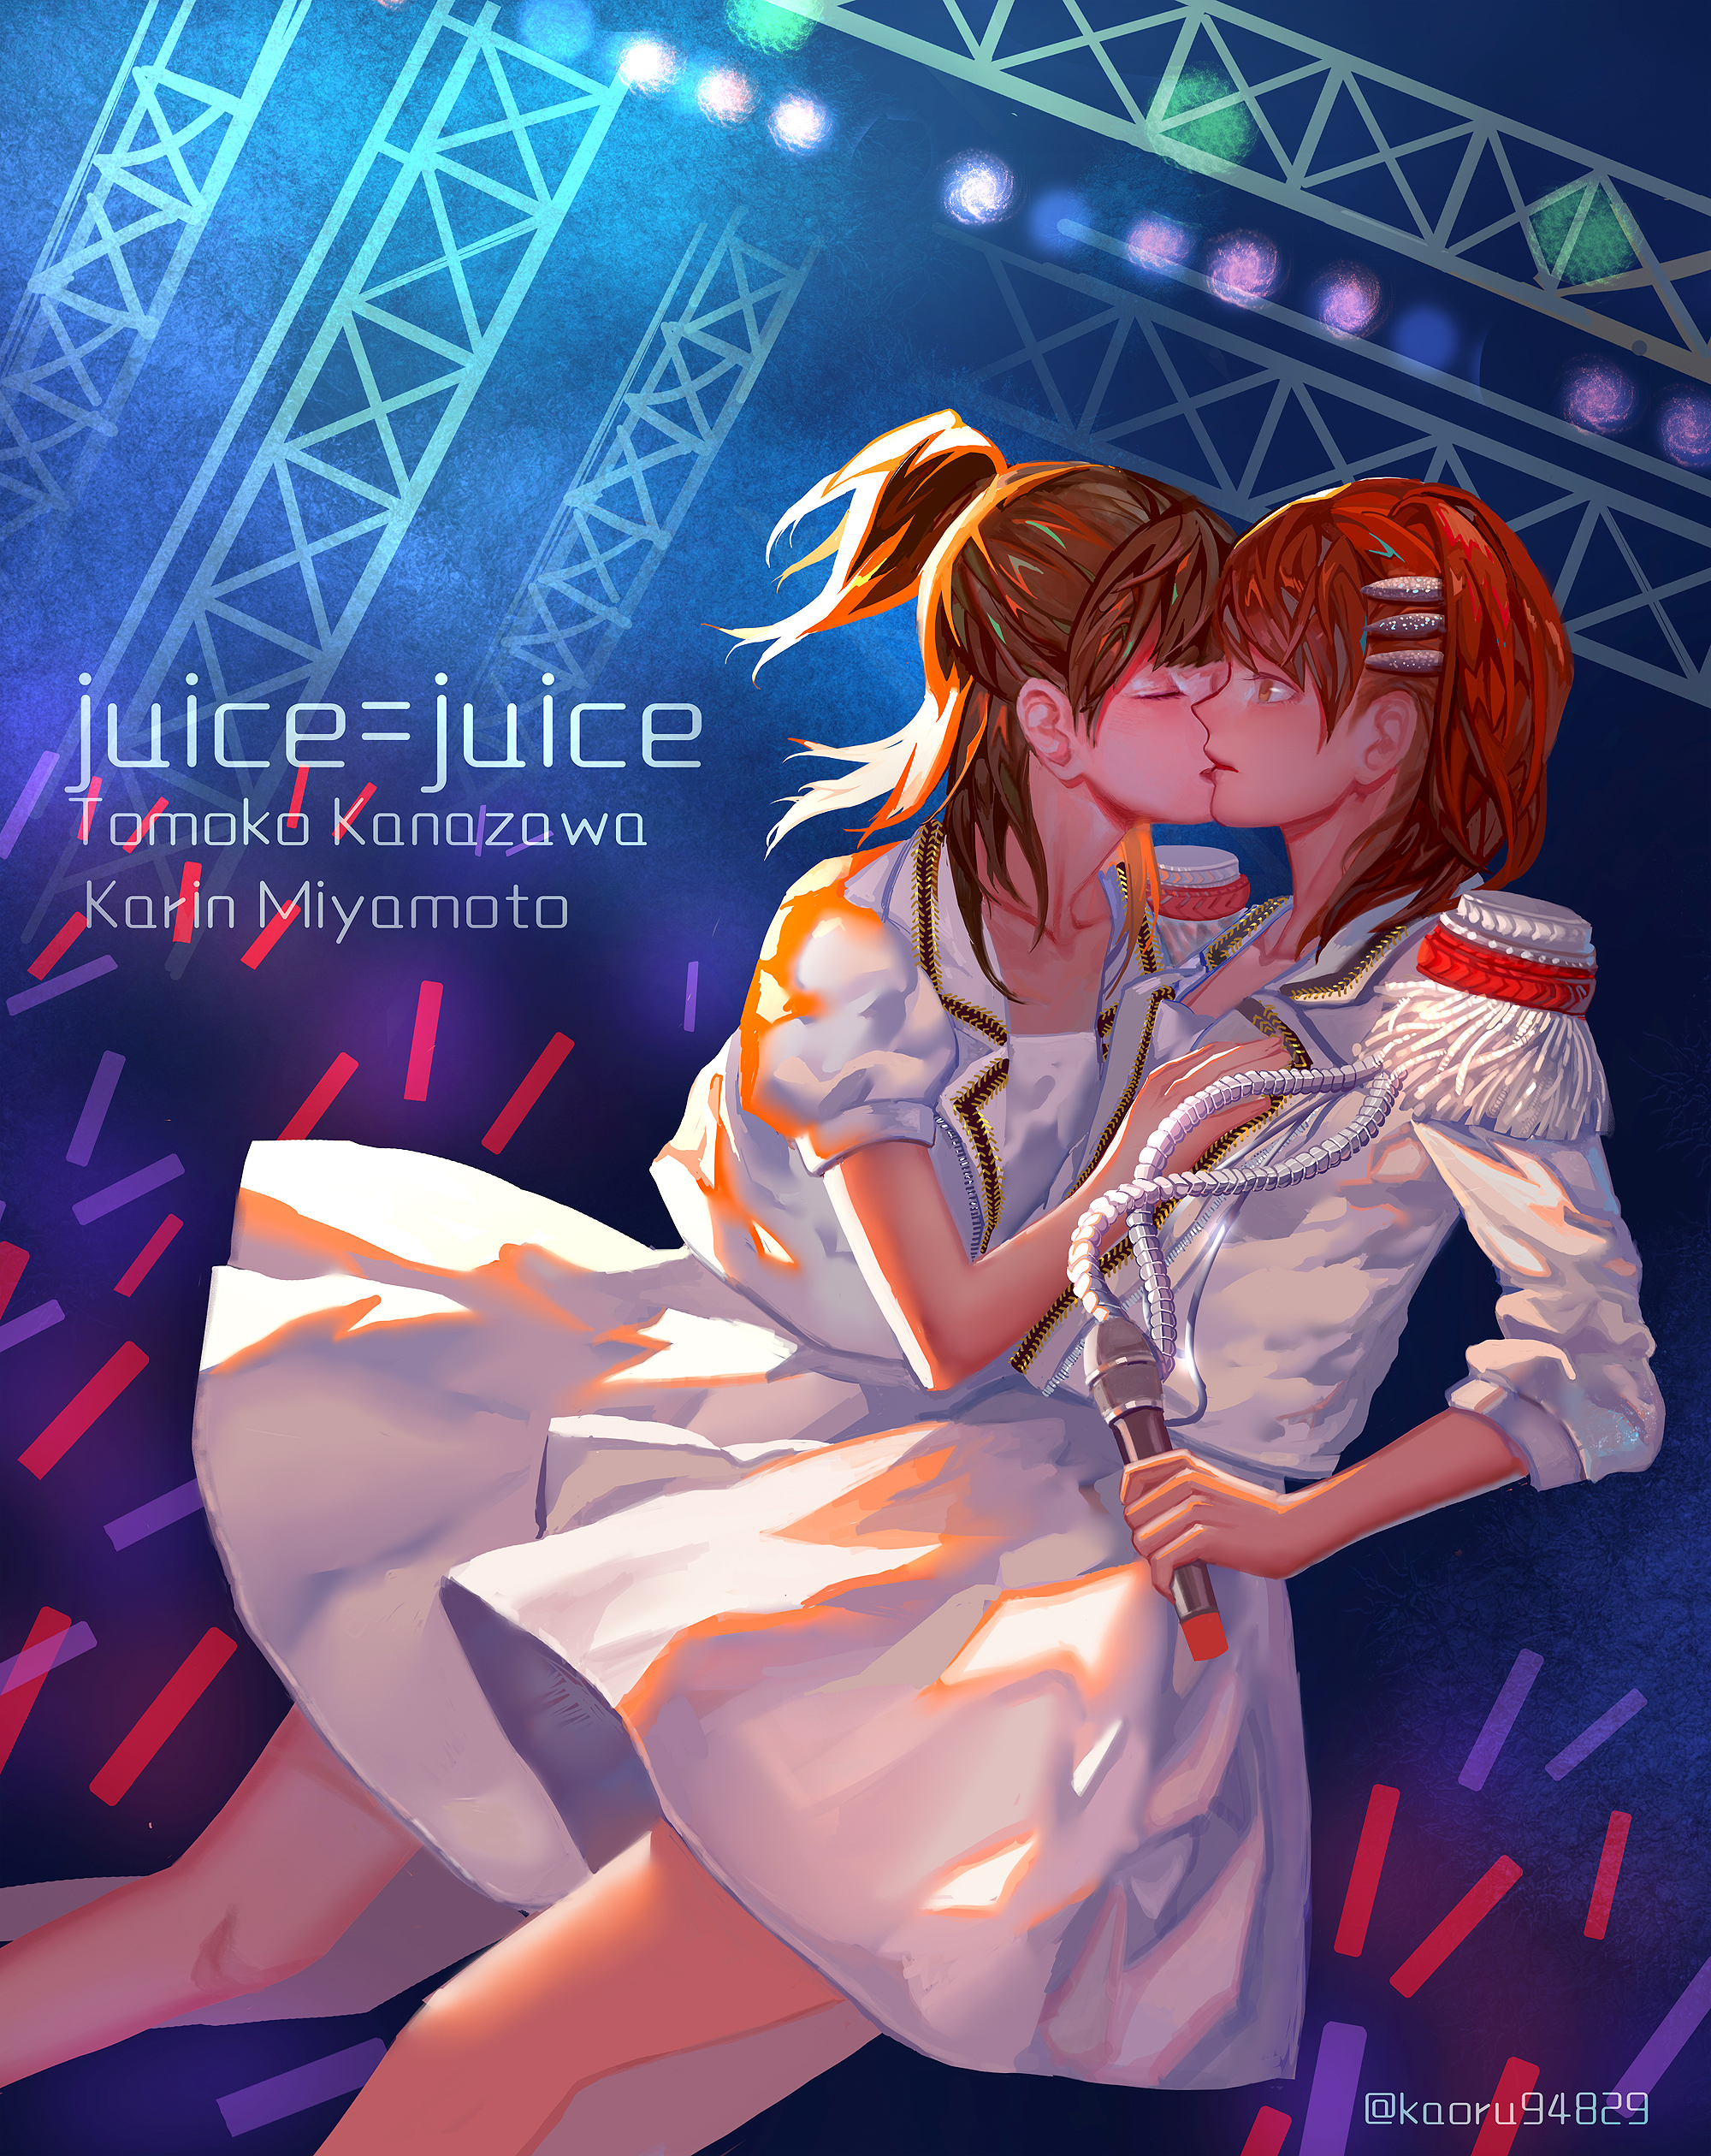 亮子铃-早安家族juice=juice